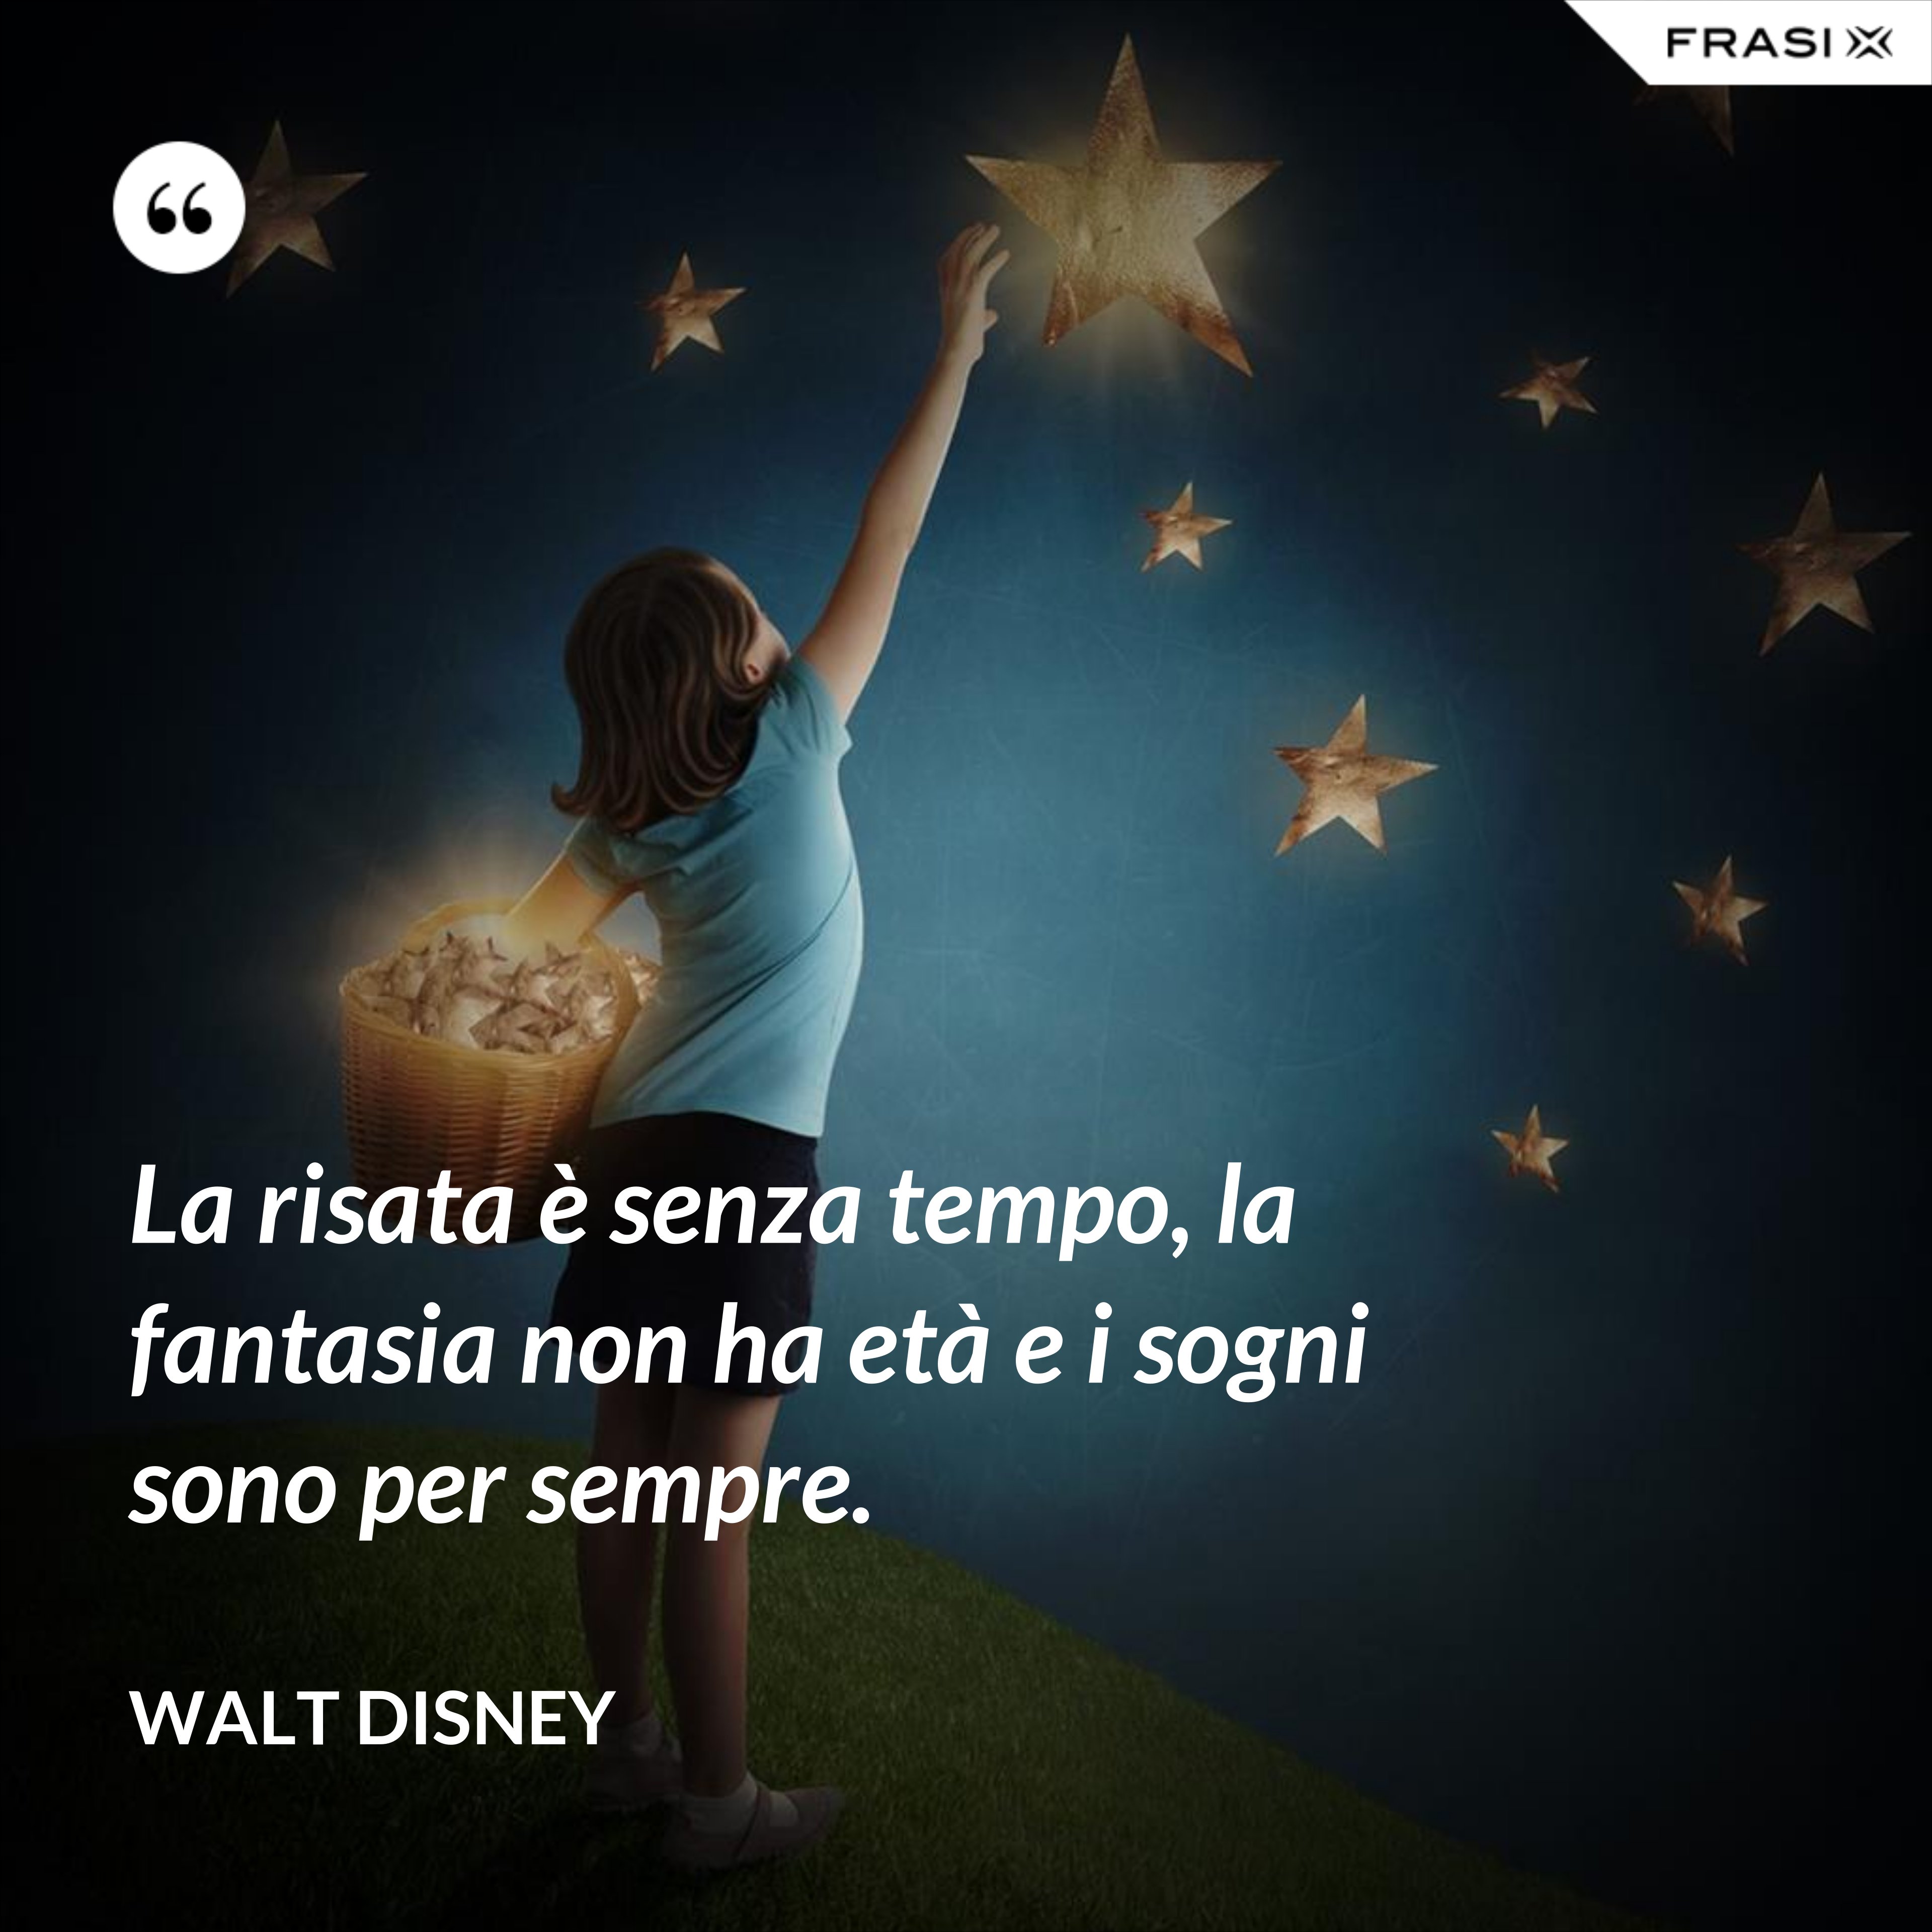 La risata è senza tempo, la fantasia non ha età e i sogni sono per sempre. - Walt Disney